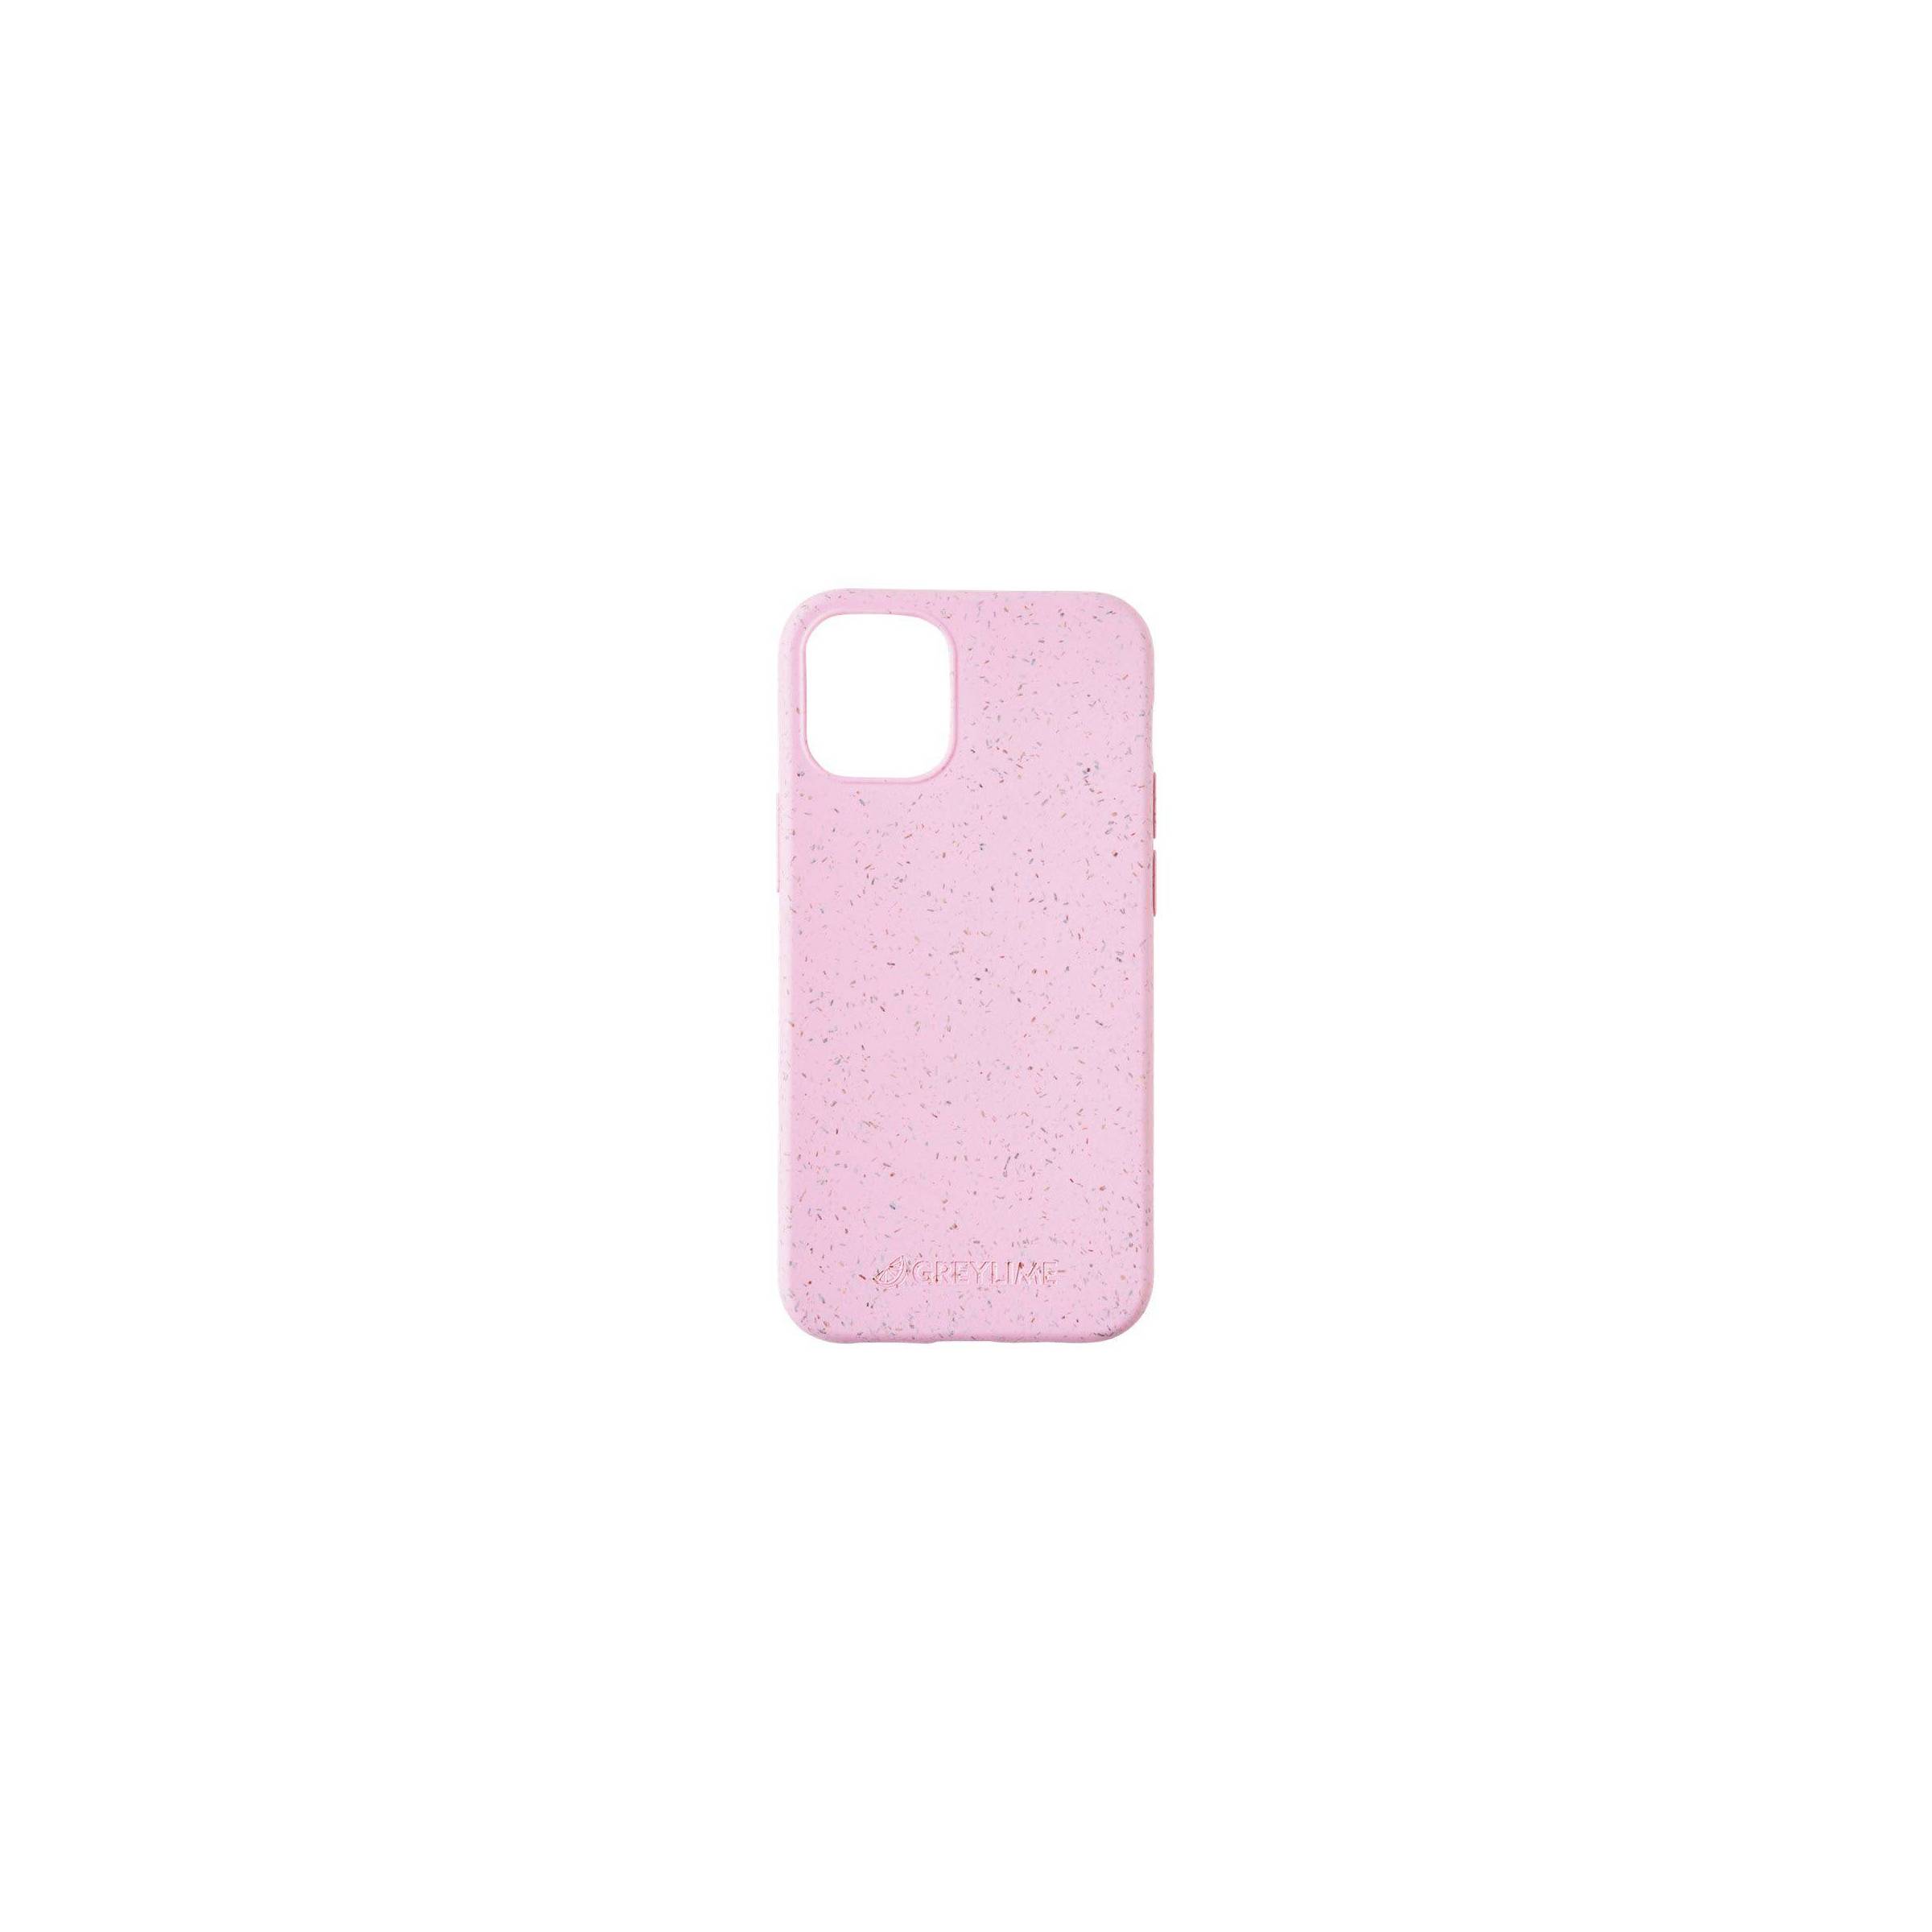 Bilde av Greylime Iphone 12 Mini Biodegradable Cover, Pink